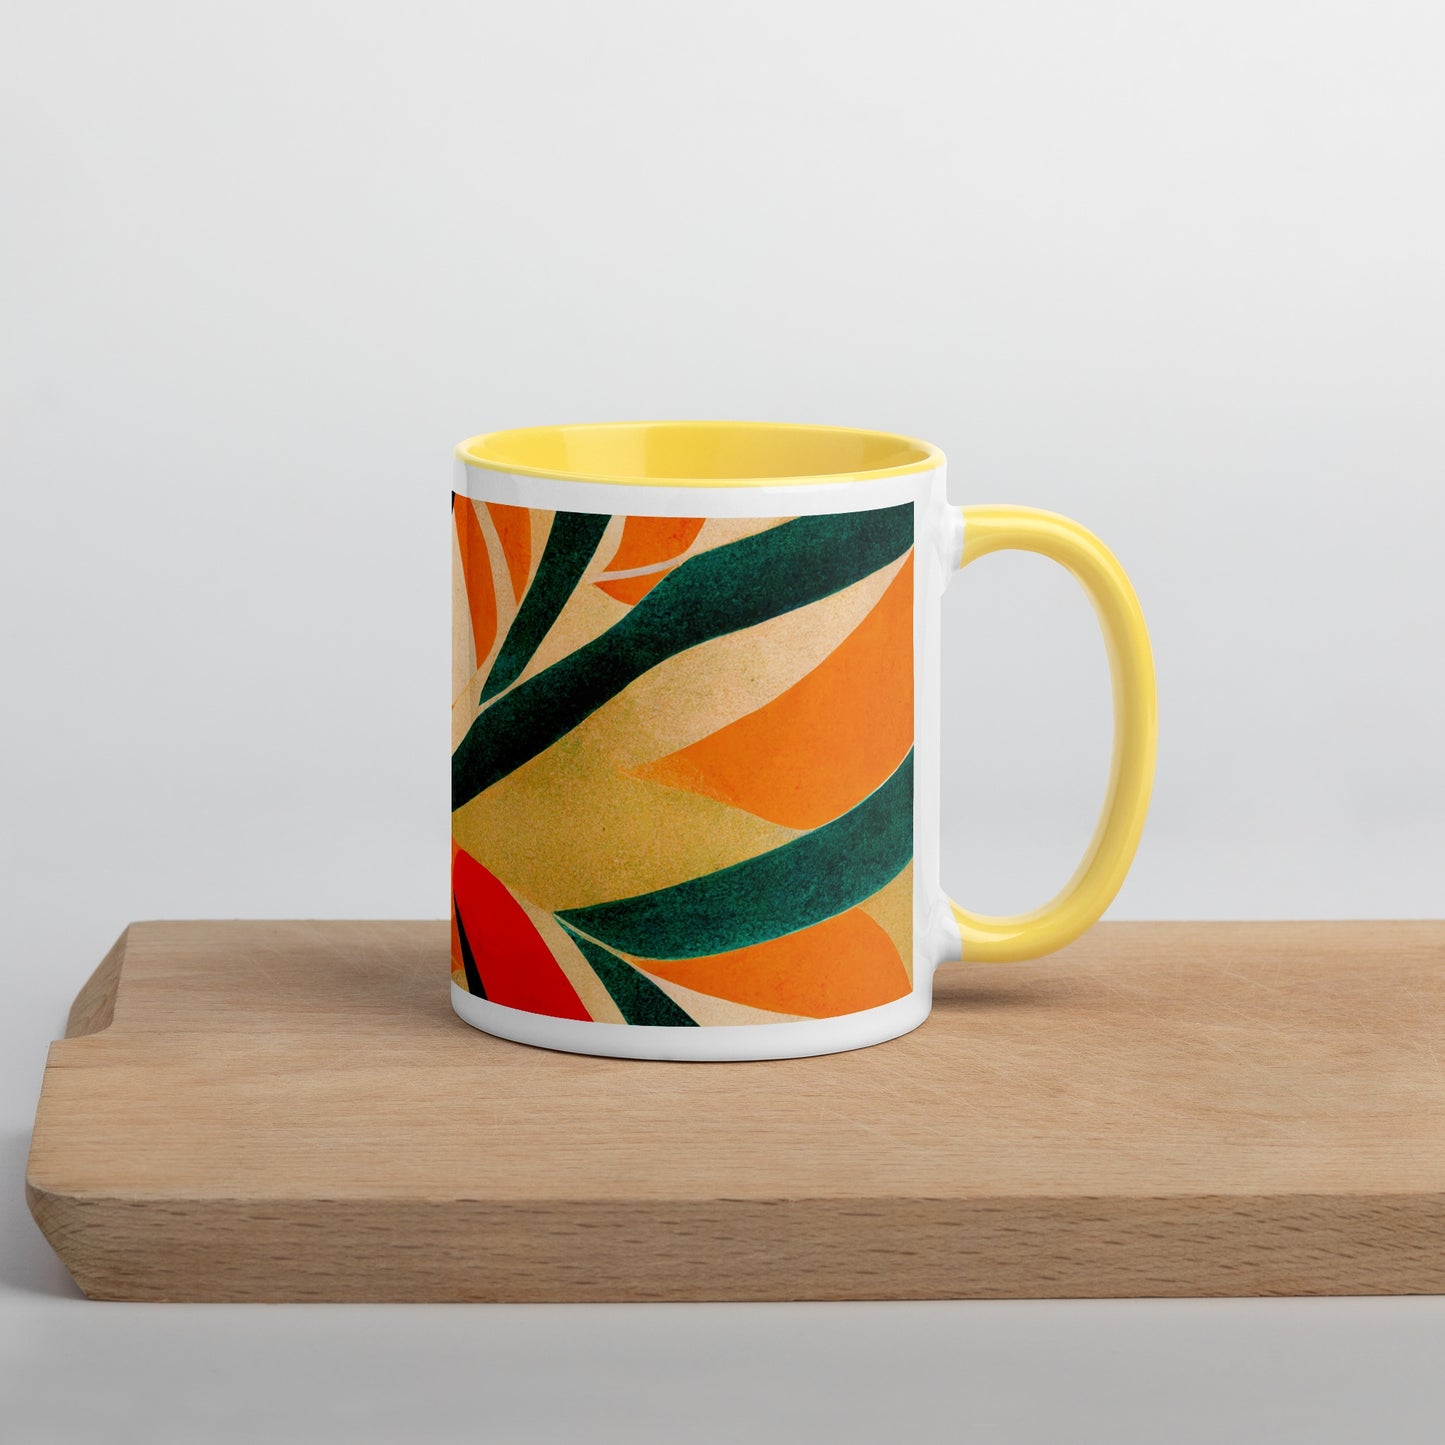 Hot Forest Ceramic Mug with Color Inside